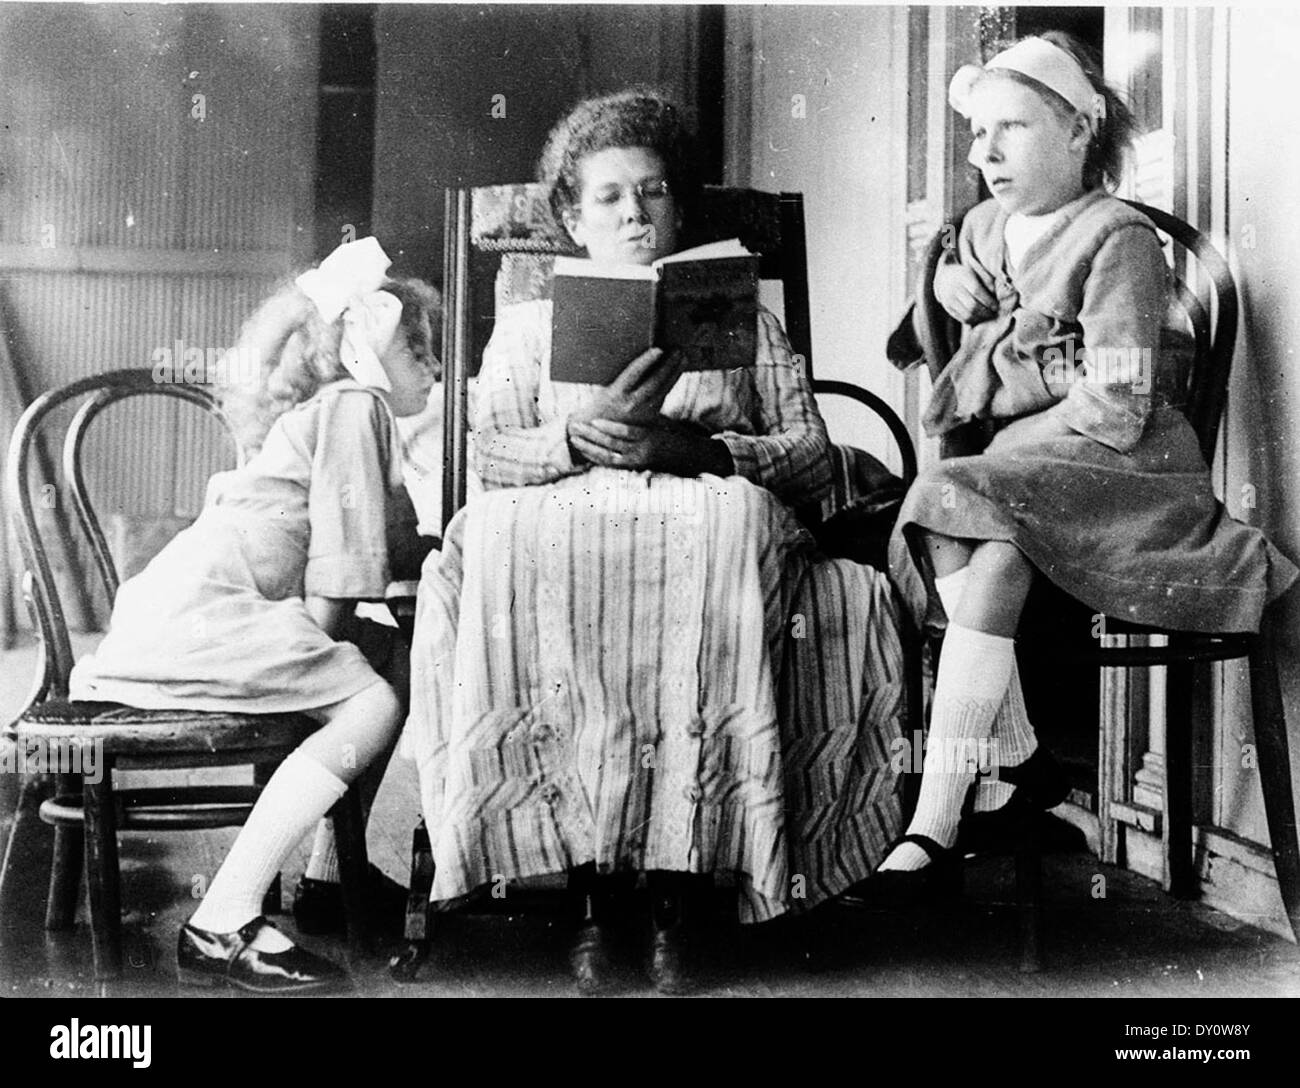 Lecture de la mère aux filles - zone de scone, NSW, par - James Brindley leard l à r : Marjorie leard, mary rose leard, Evelyn 'mleard eadulegular' kars springs, c. 1913 Banque D'Images